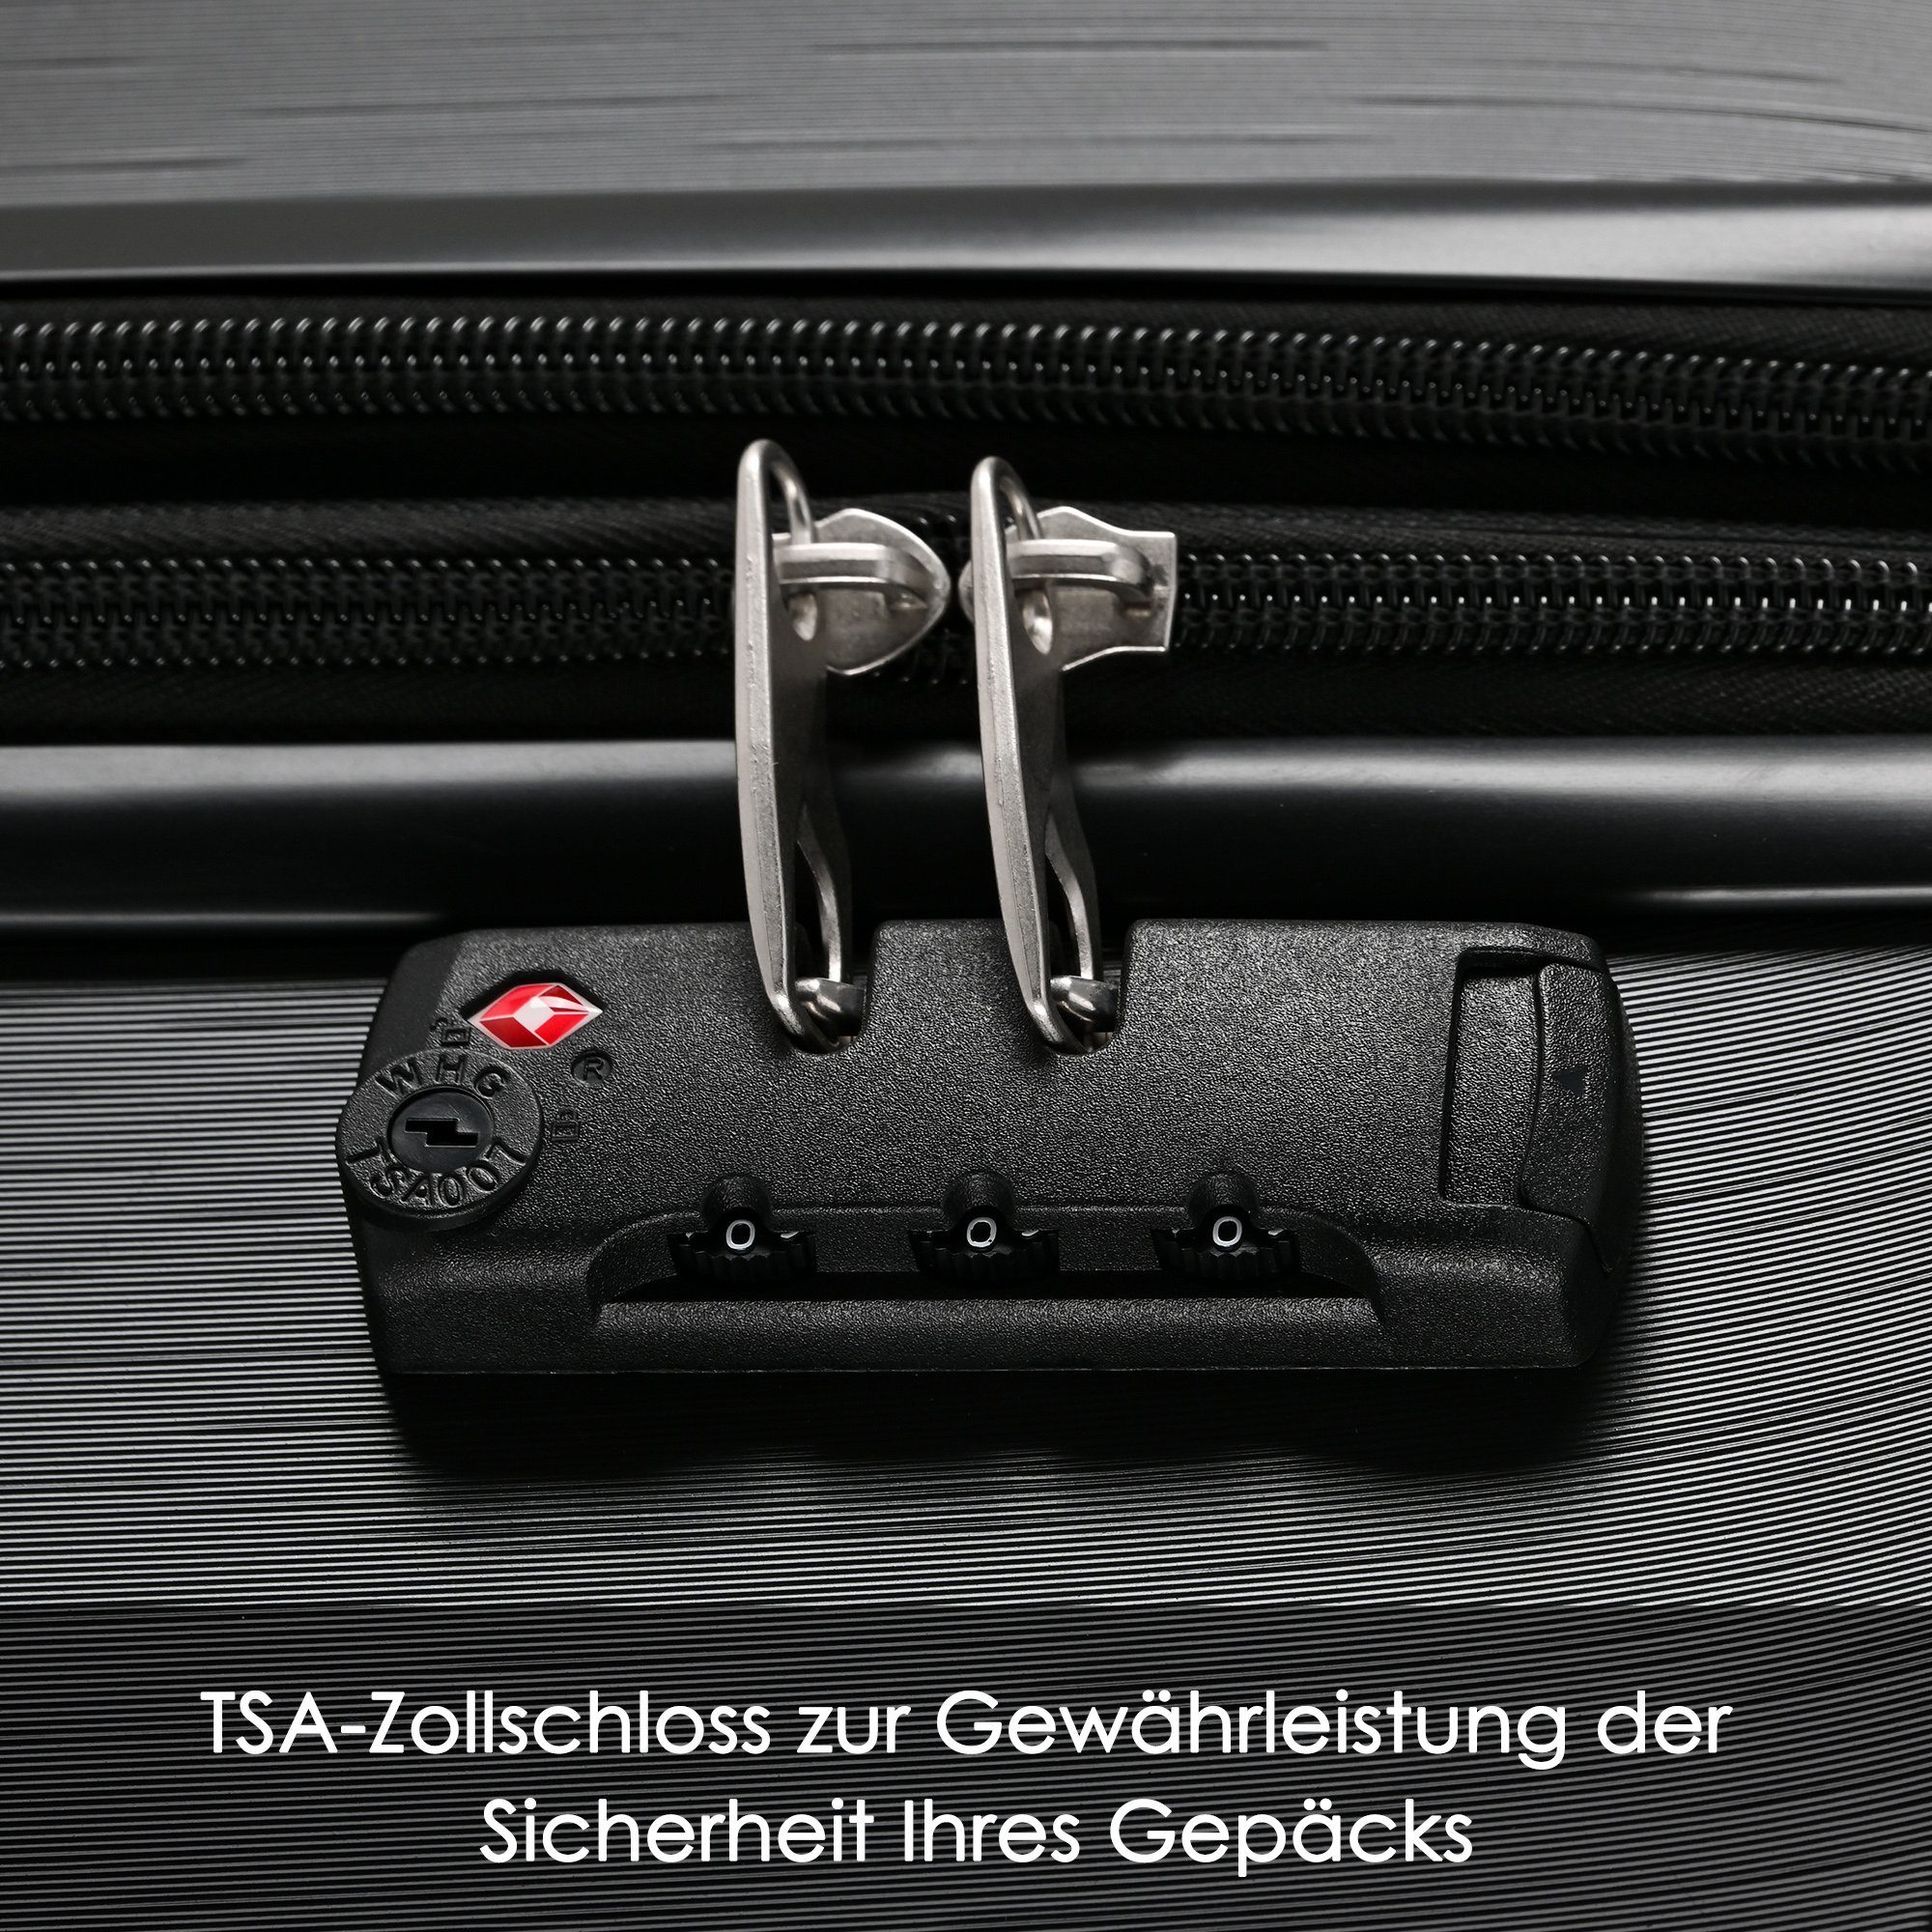 Flieks Trolleyset, 4 Set tlg), Schwarz Rollen, Hartschale Handgepäck (3 Trolley Reisekoffer Kofferset